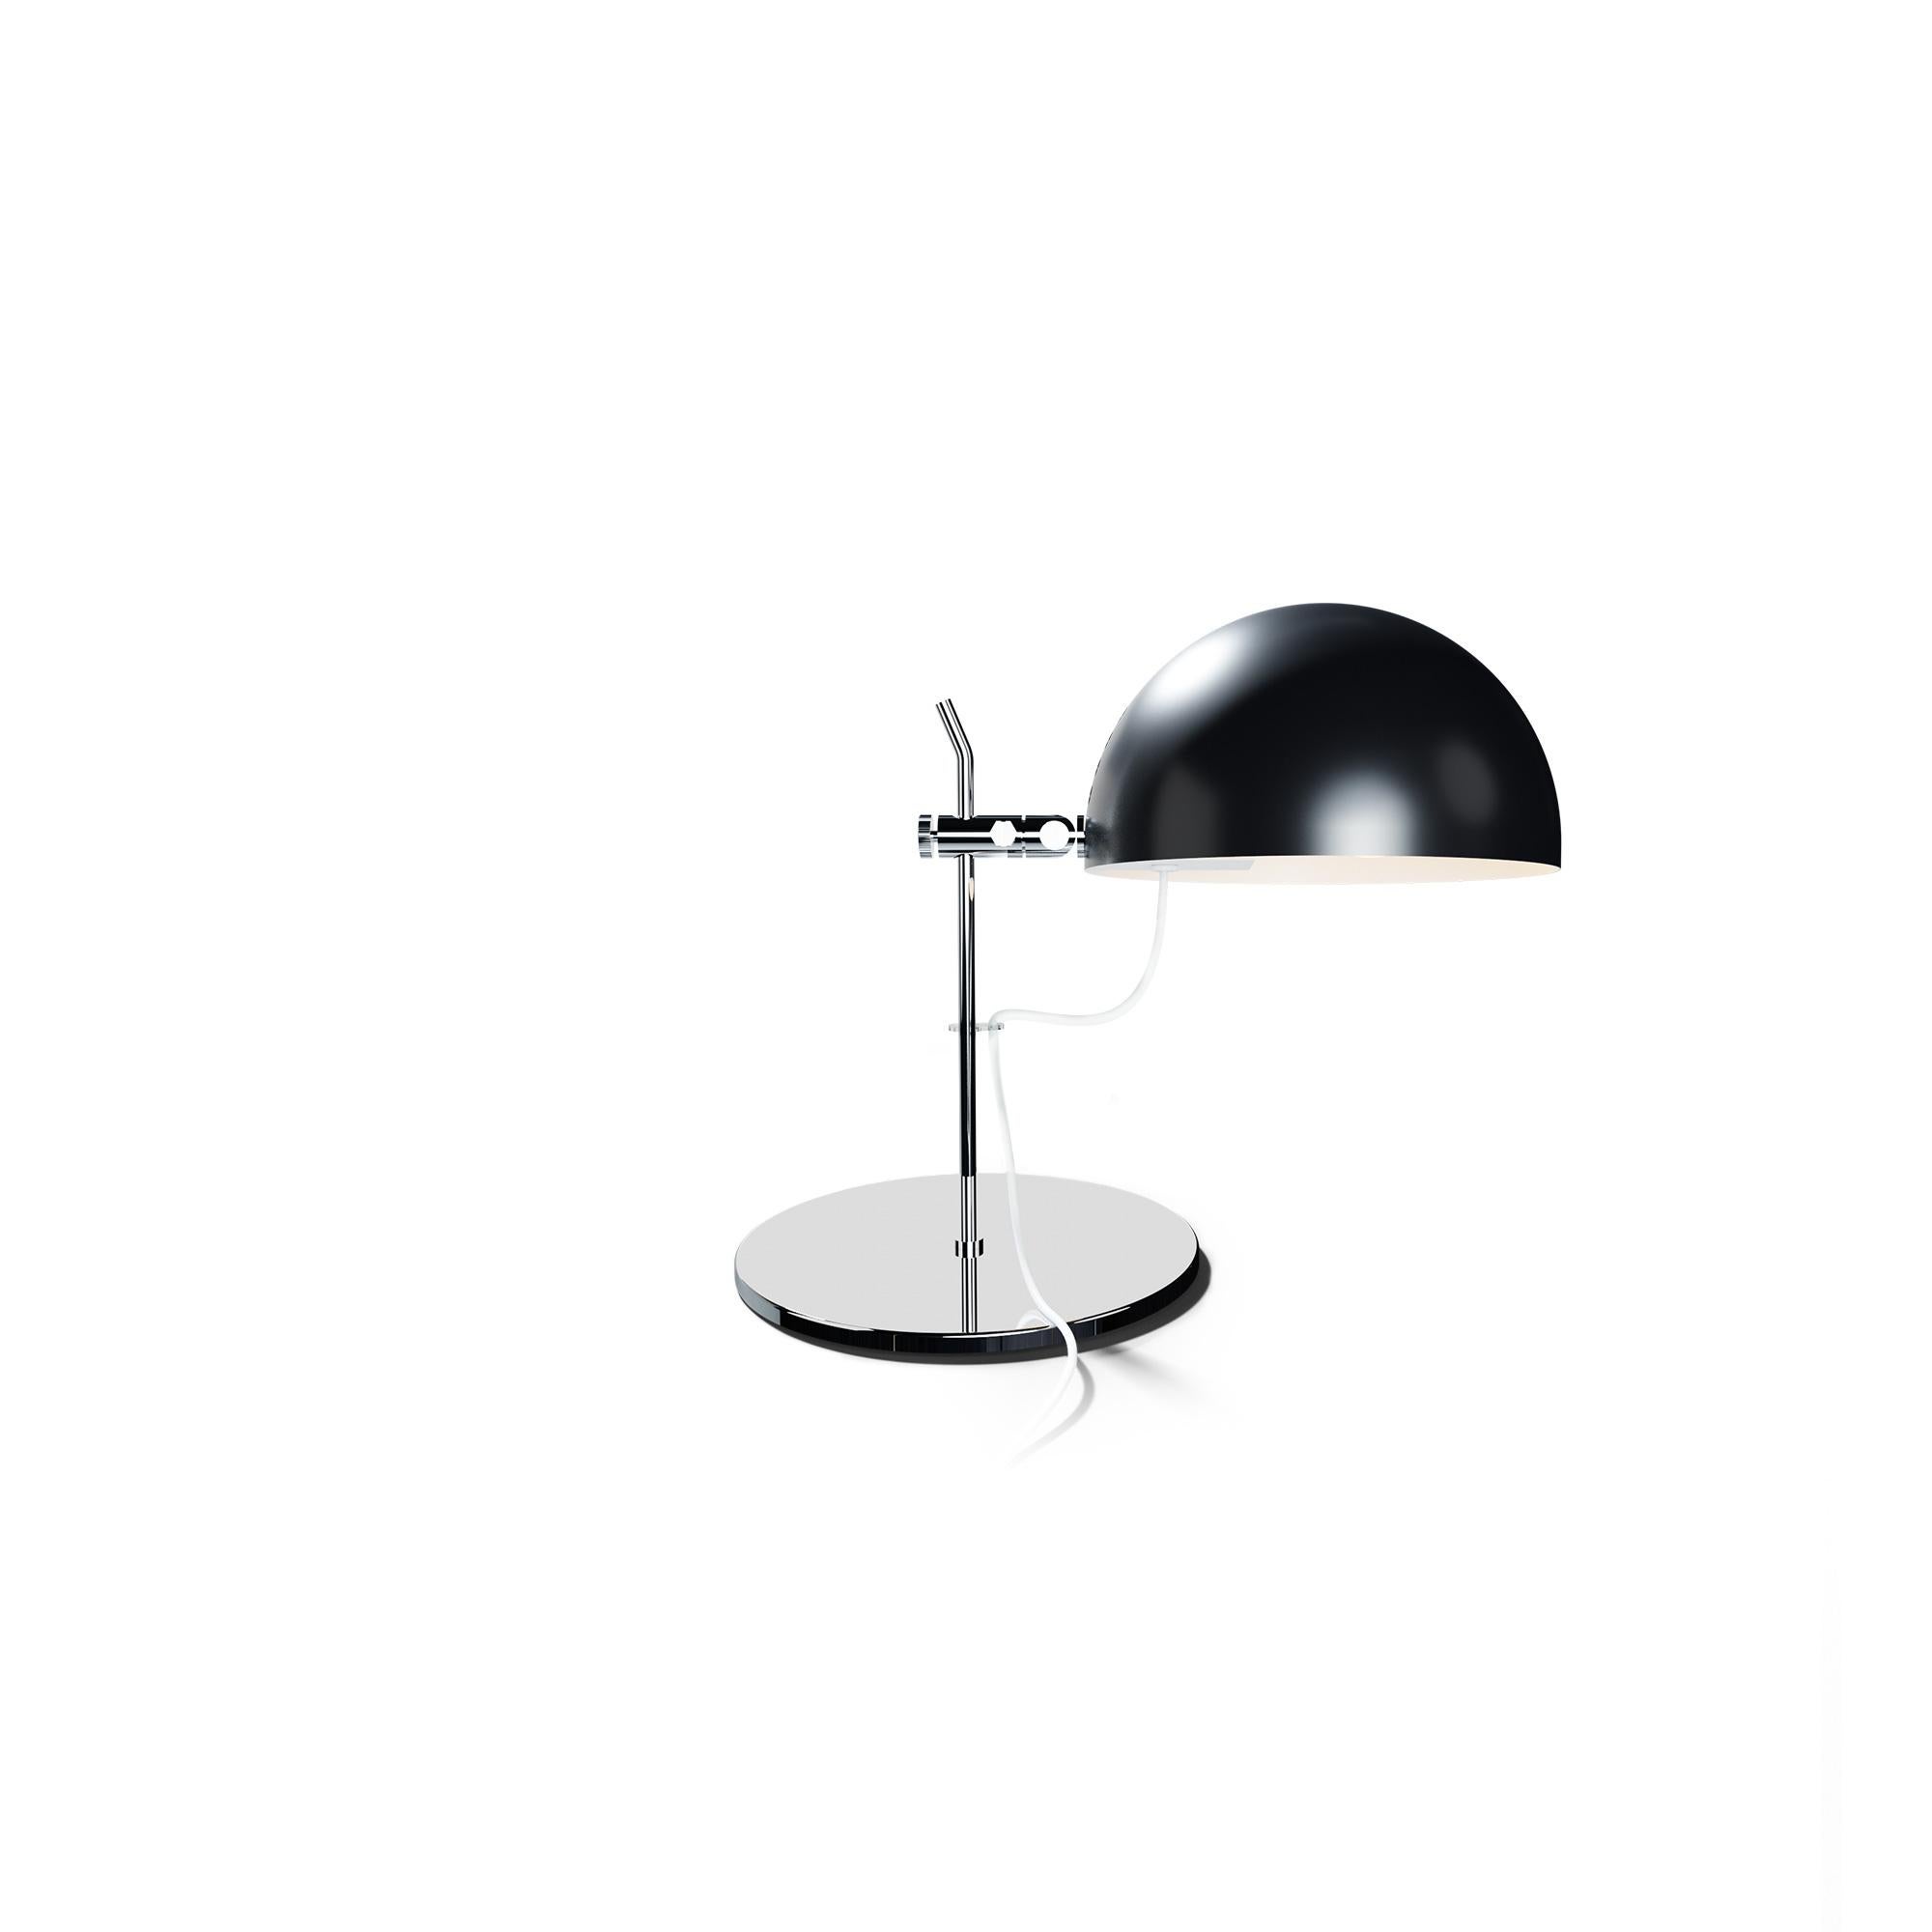 Alain Richard 'A22f' Task Lamp in Black for Disderot For Sale 8